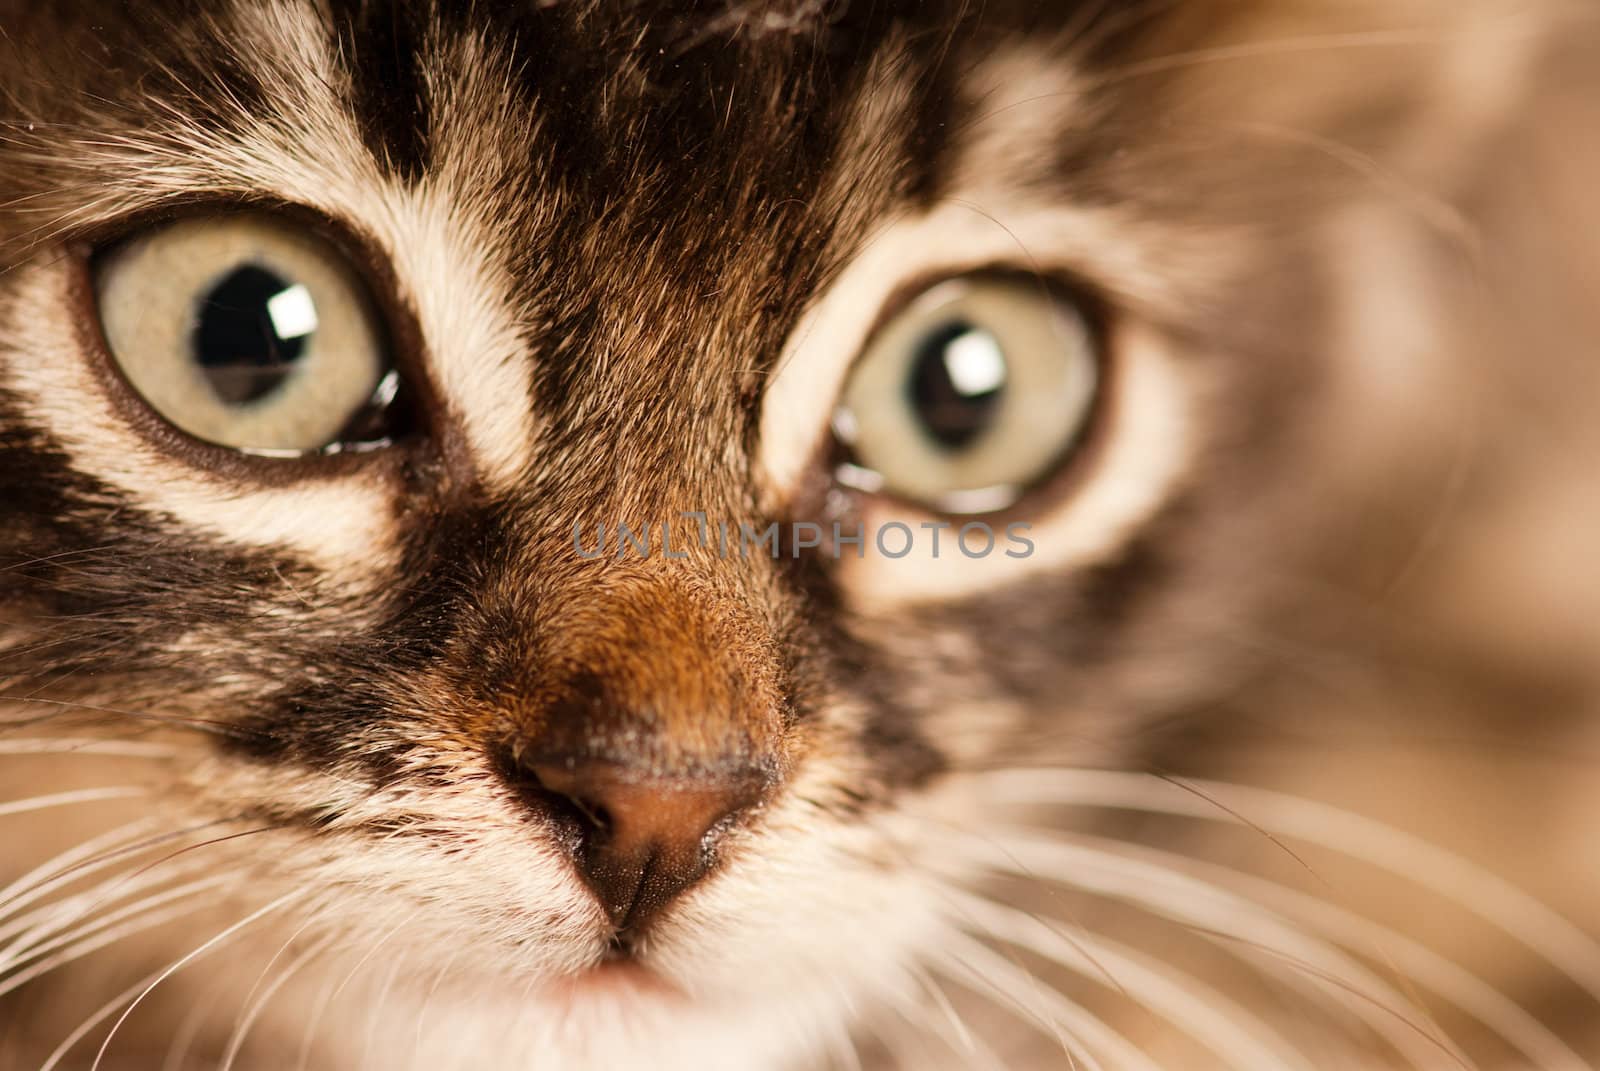 Feline look in focus with soft studio light